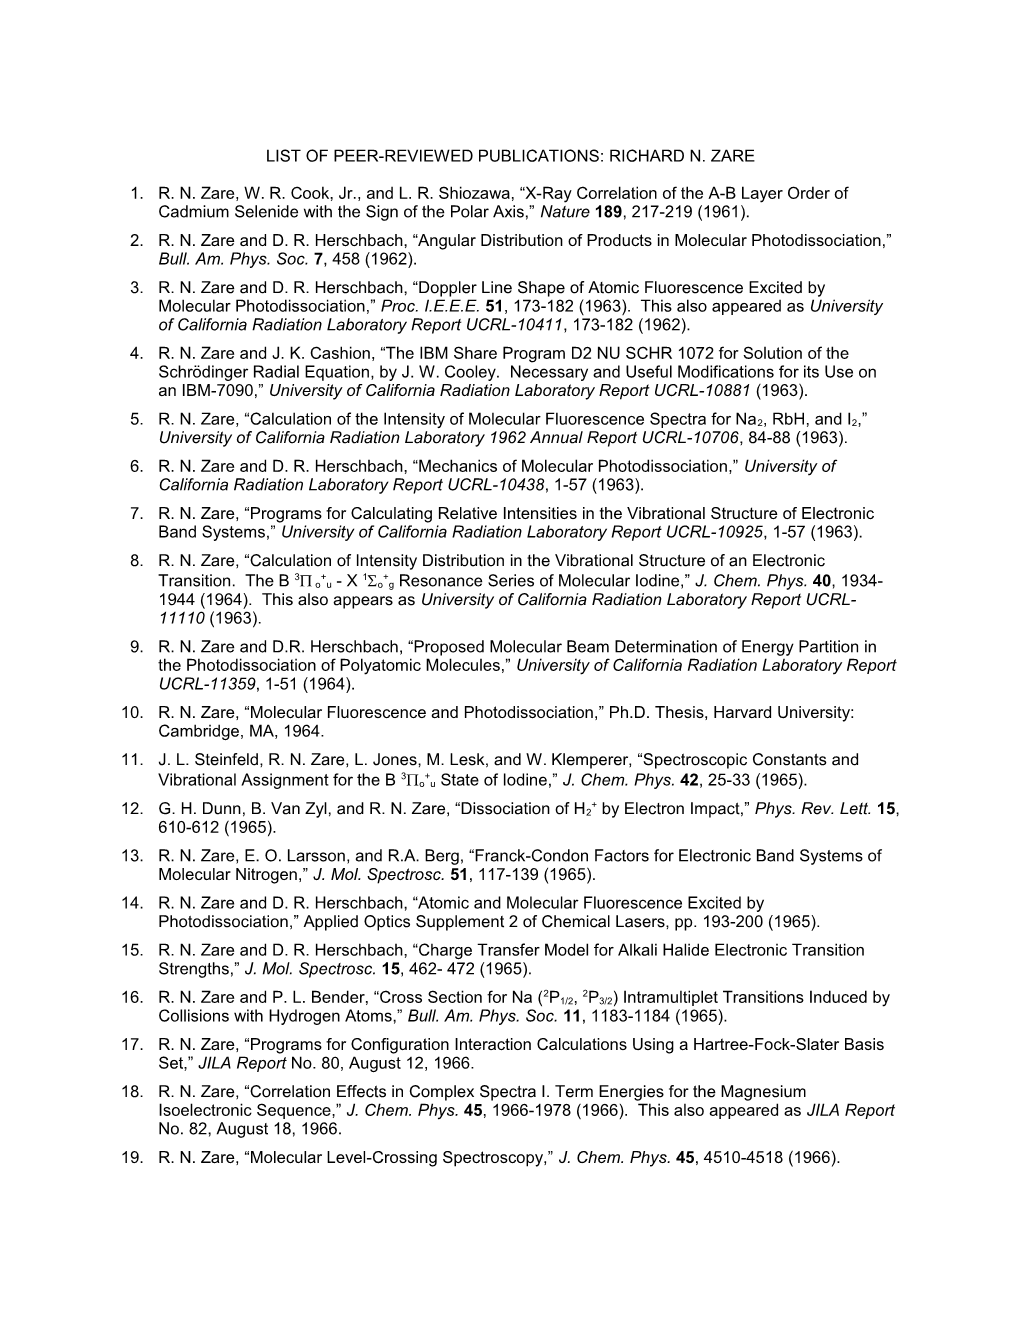 List of Peer-Reviewed Publications: Richard N. Zare